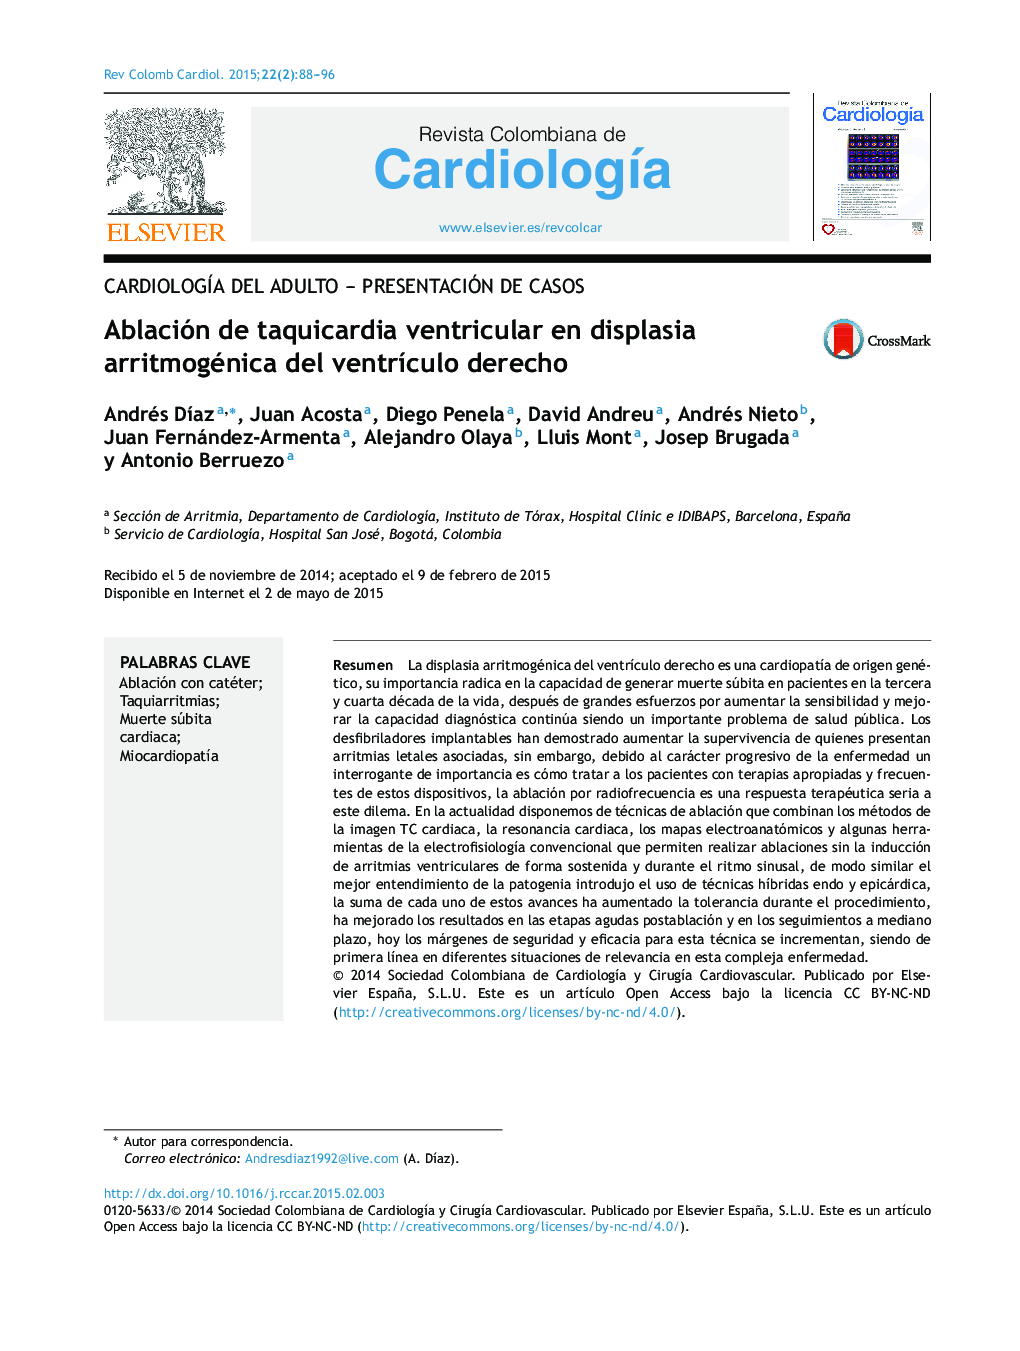 Ablación de taquicardia ventricular en displasia arritmogénica del ventrículo derecho